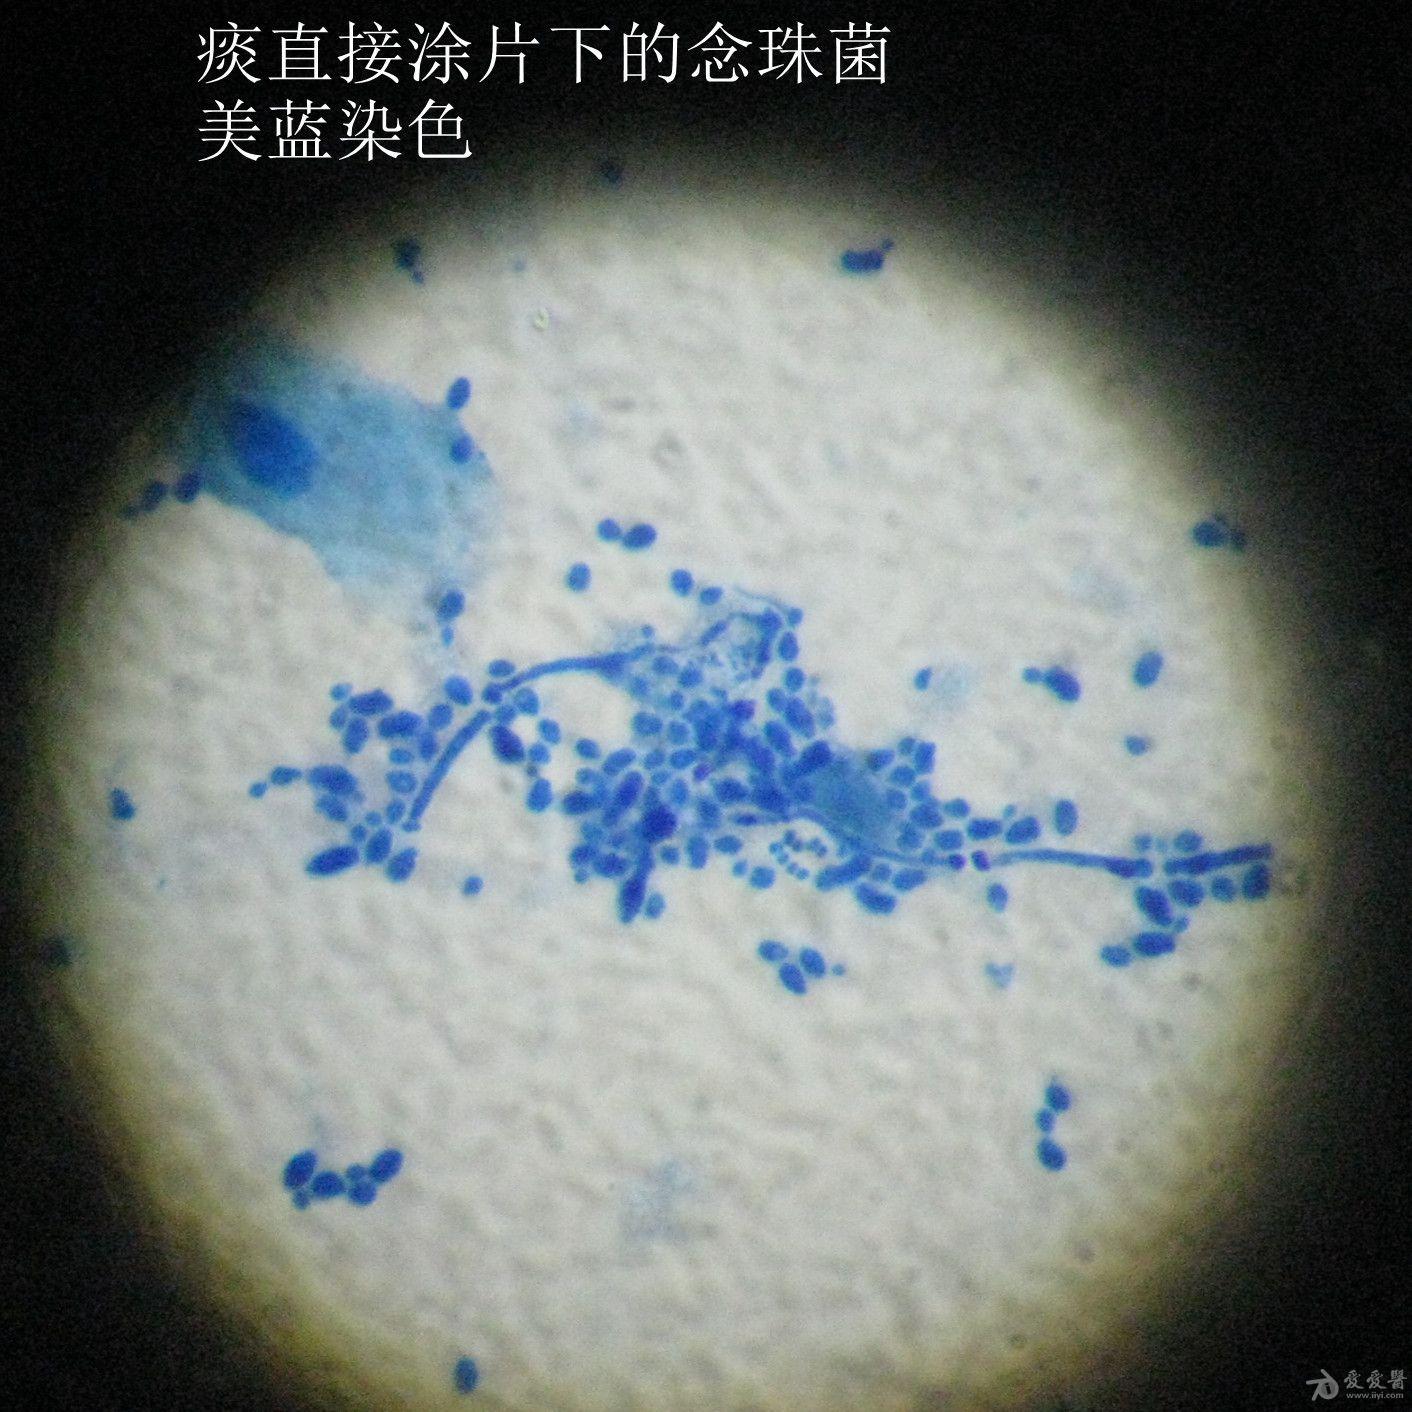 显微镜下的美丽-痰直接涂片下的念珠菌 检验医学讨论版 爱爱医医